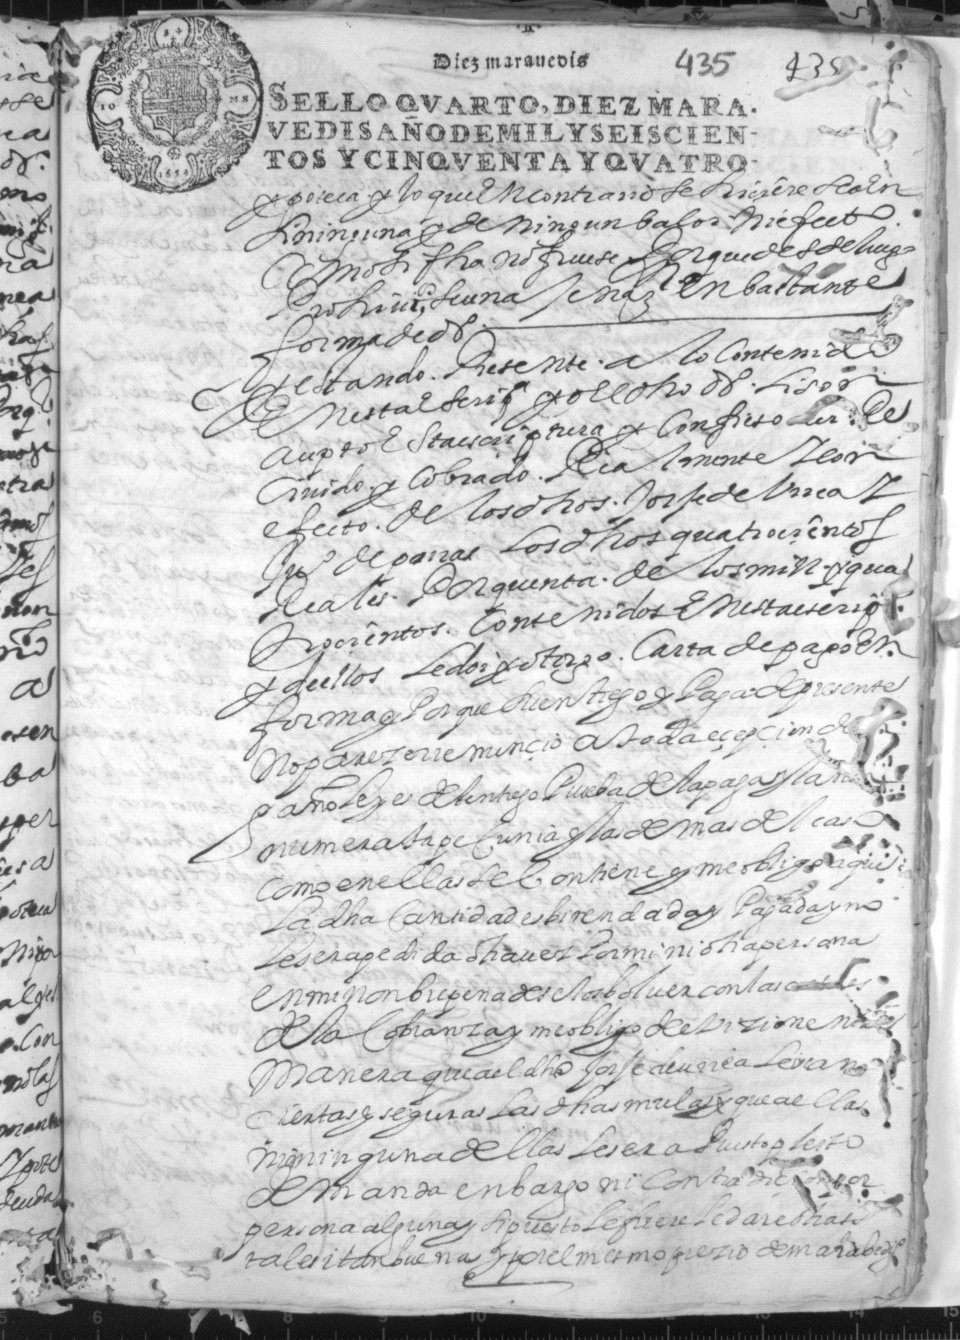 Registro de Luis de los Ríos, Murcia de 1654.